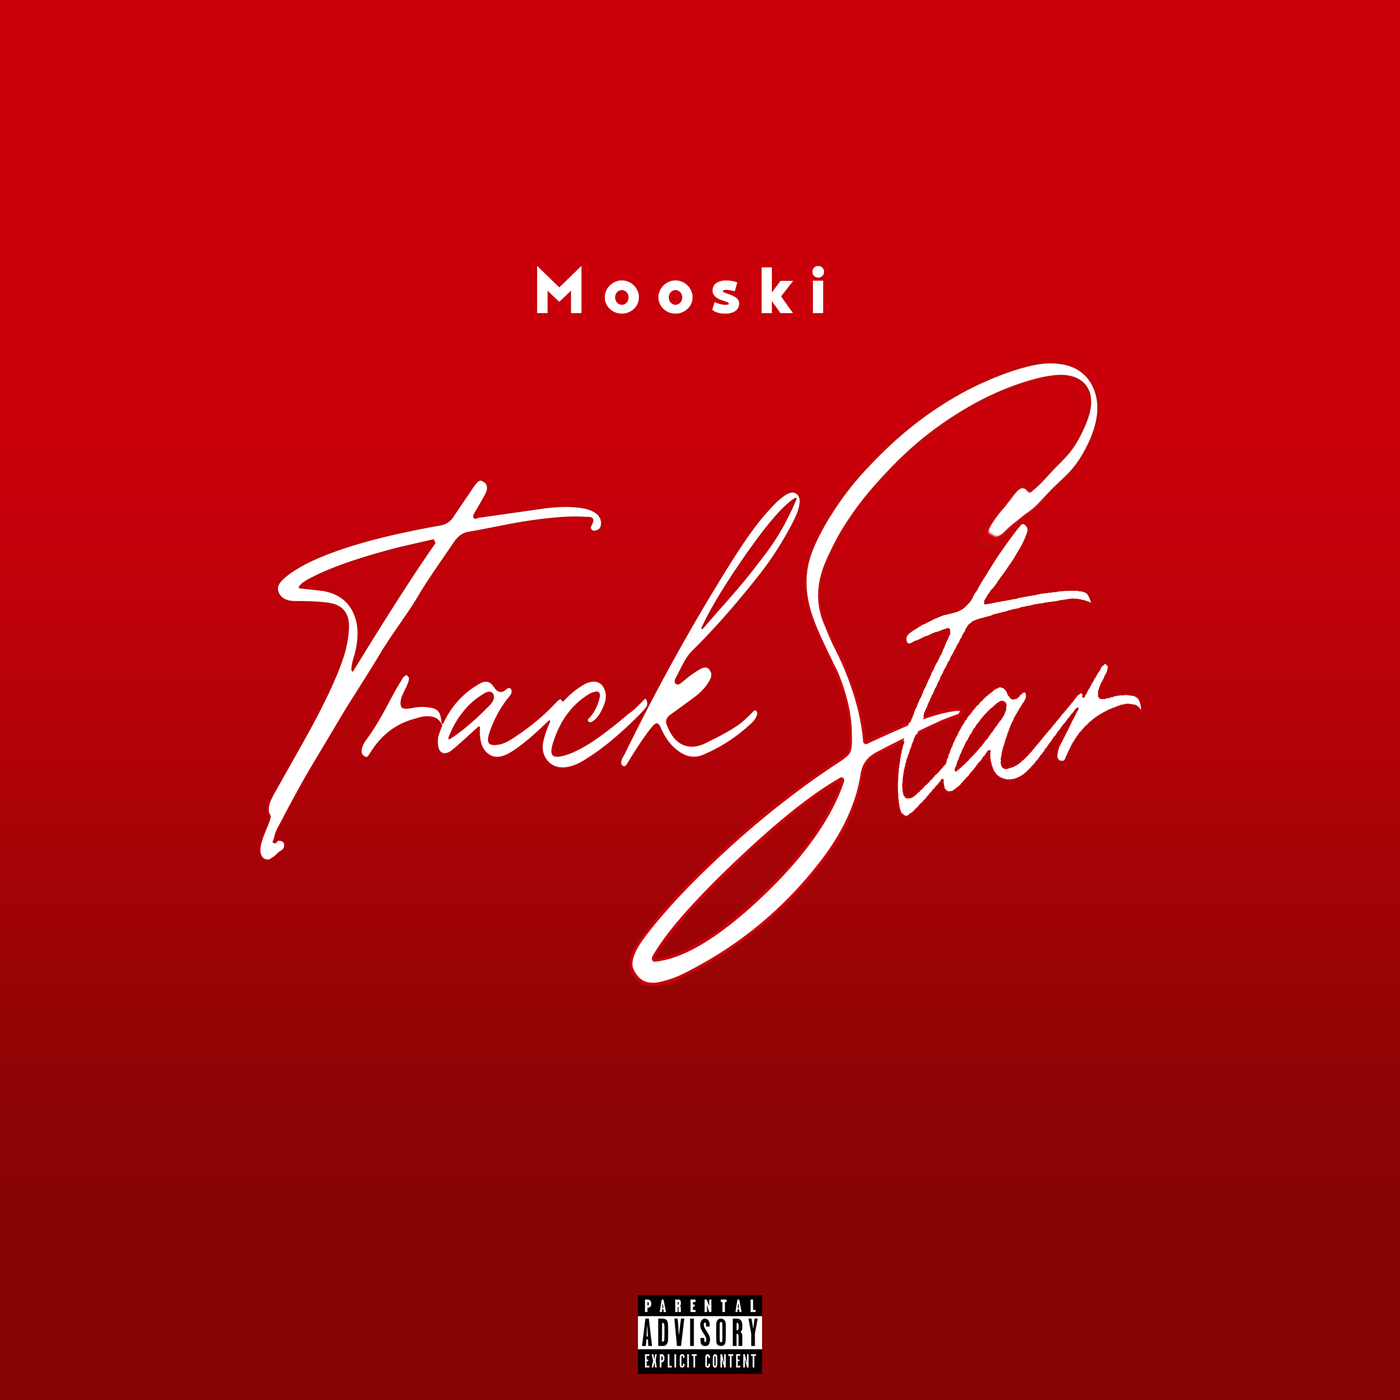 Preuzimanje datoteka Mooski - Track Star